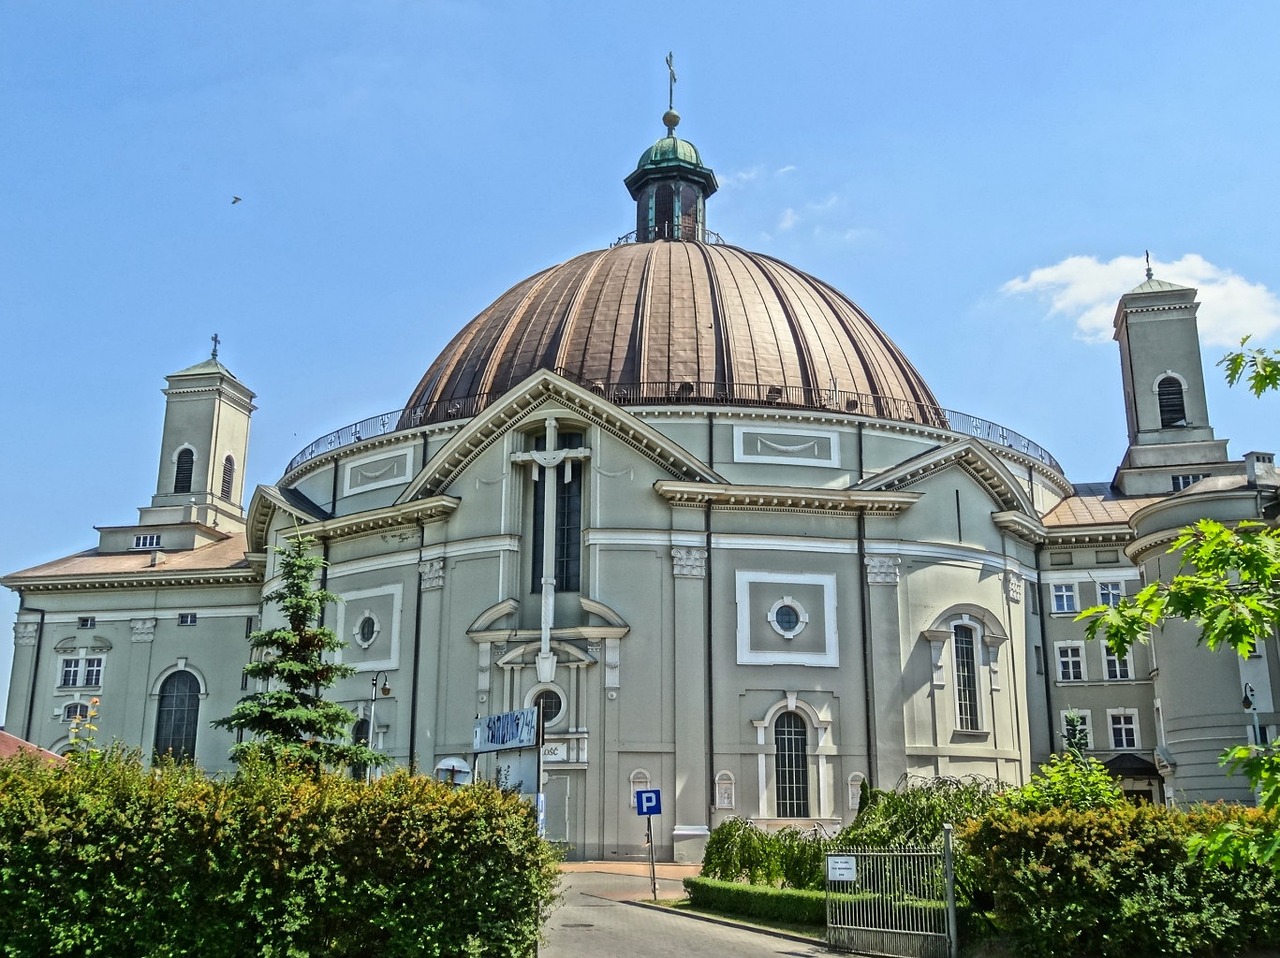 st peter's basilica vincent de paul bydgoszcz free photo